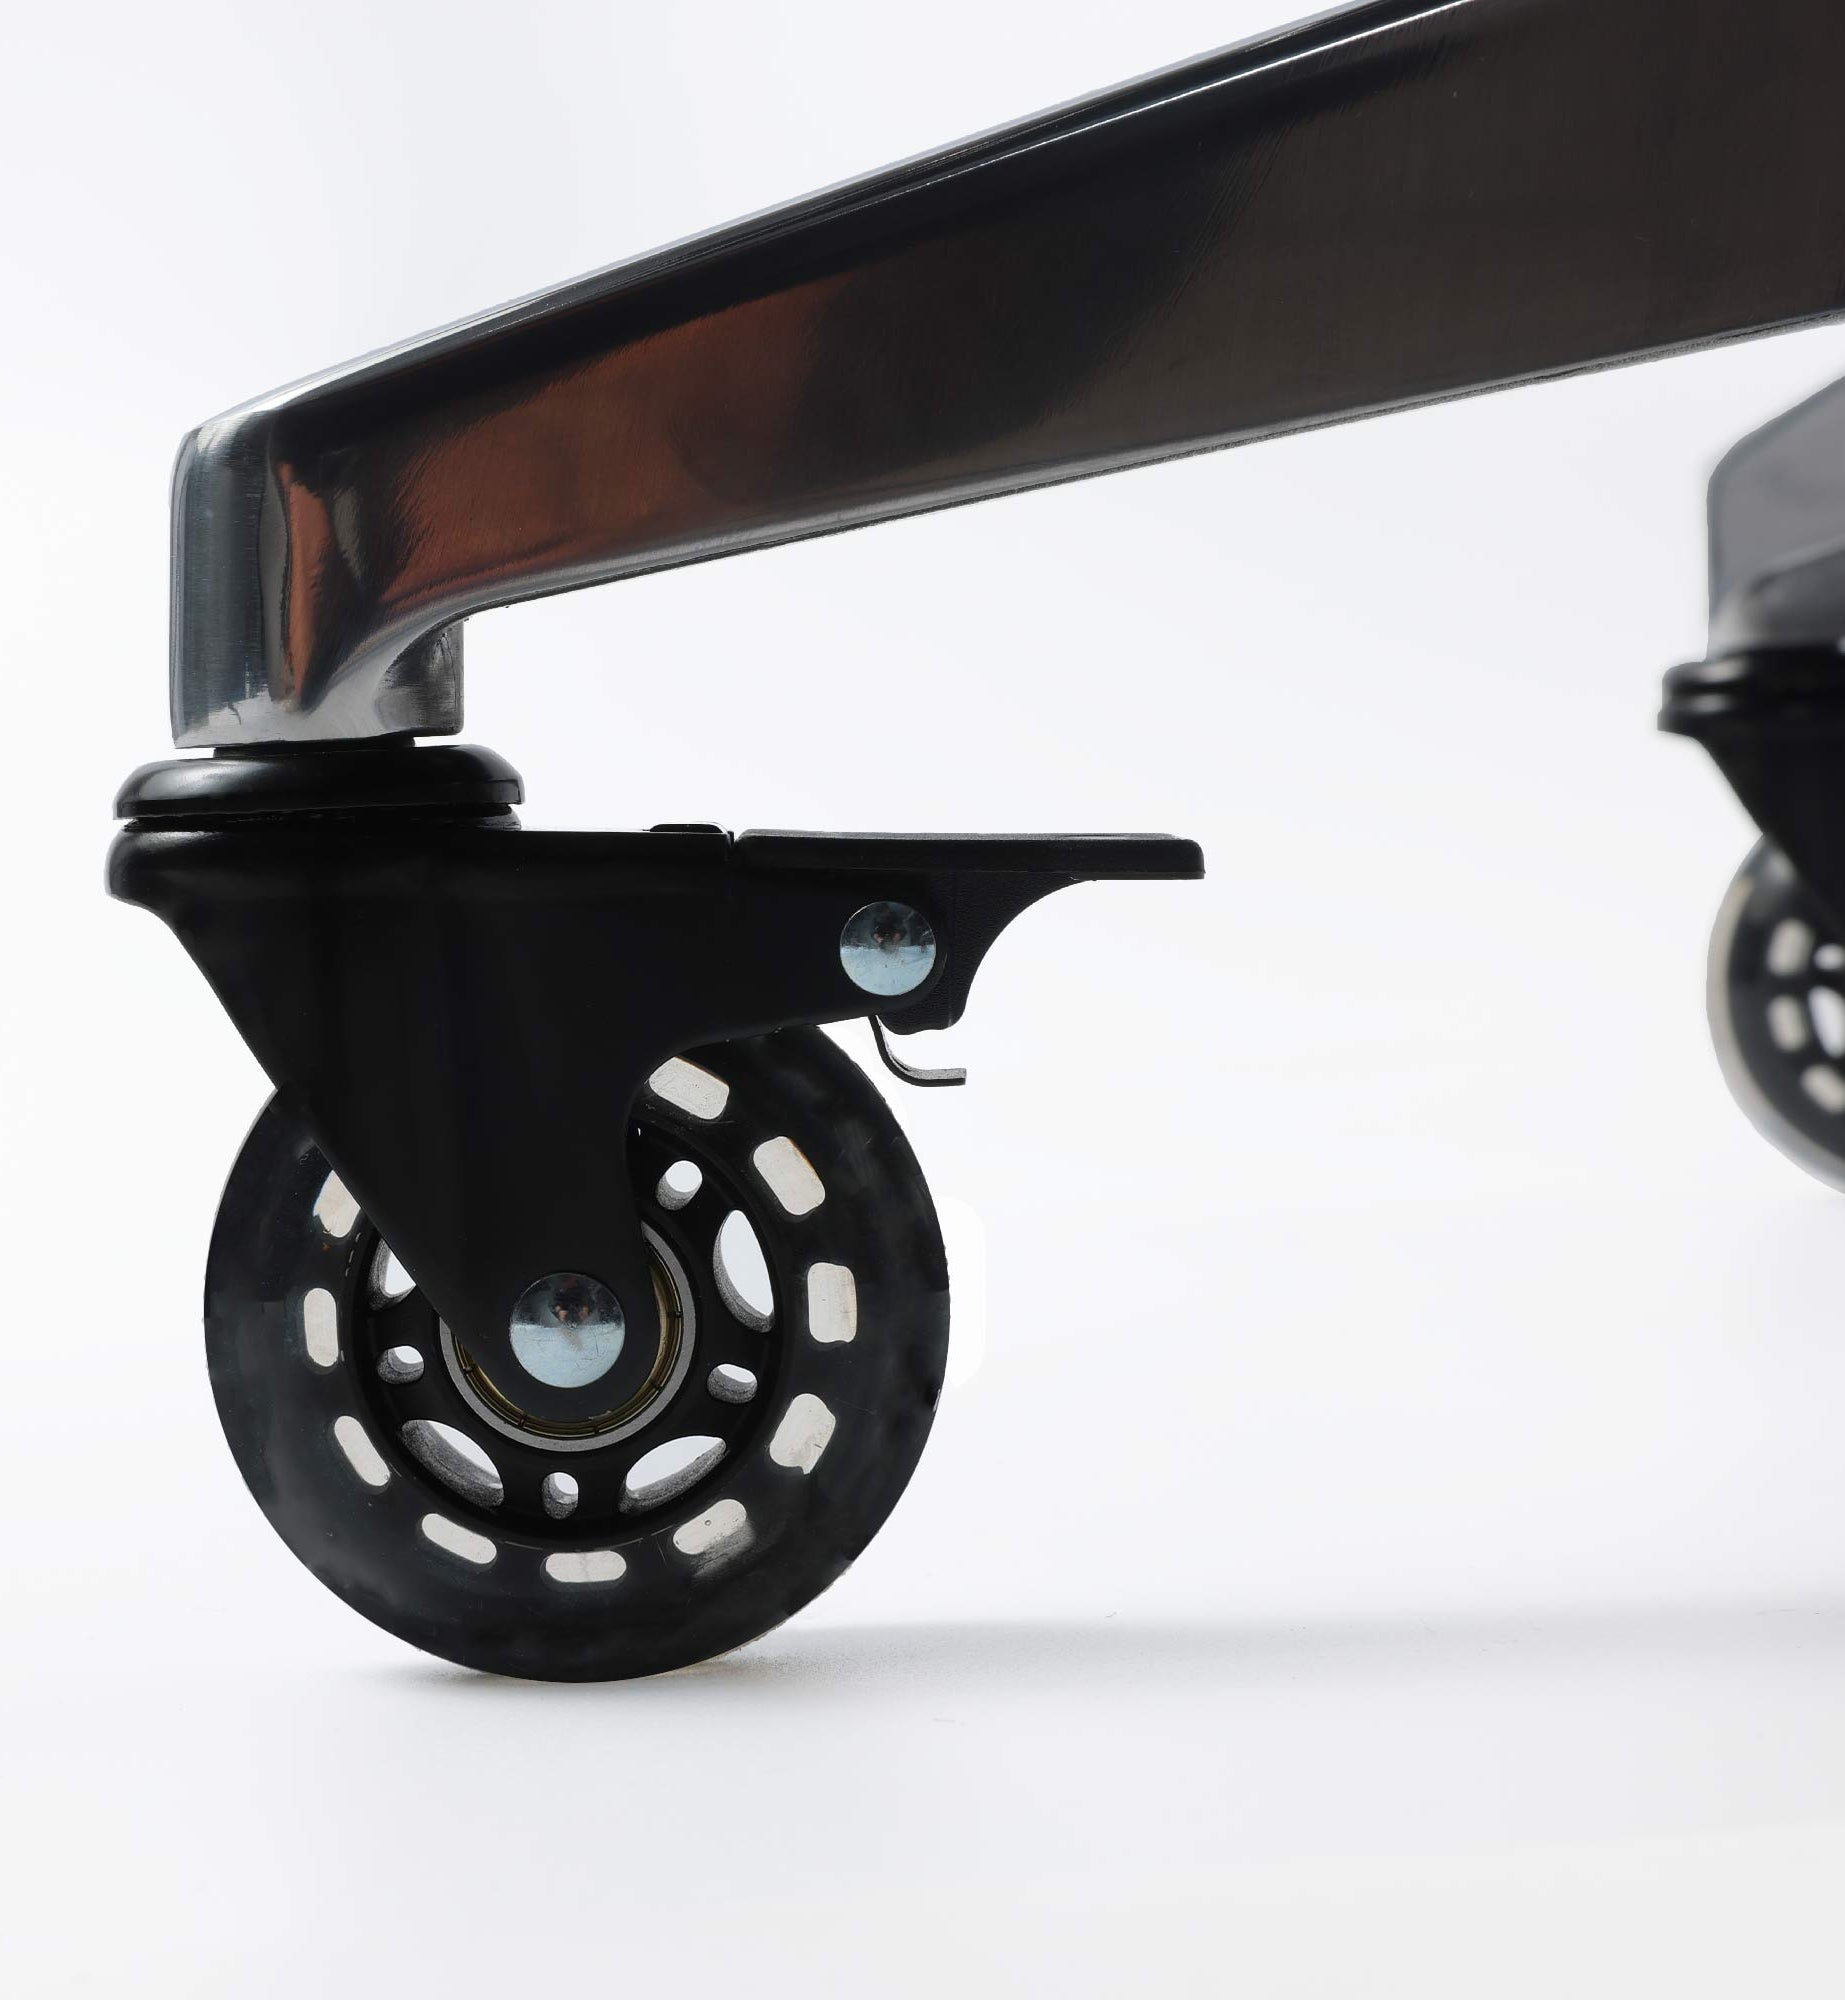 roue roller noire chaises ergonomiques KQUEO